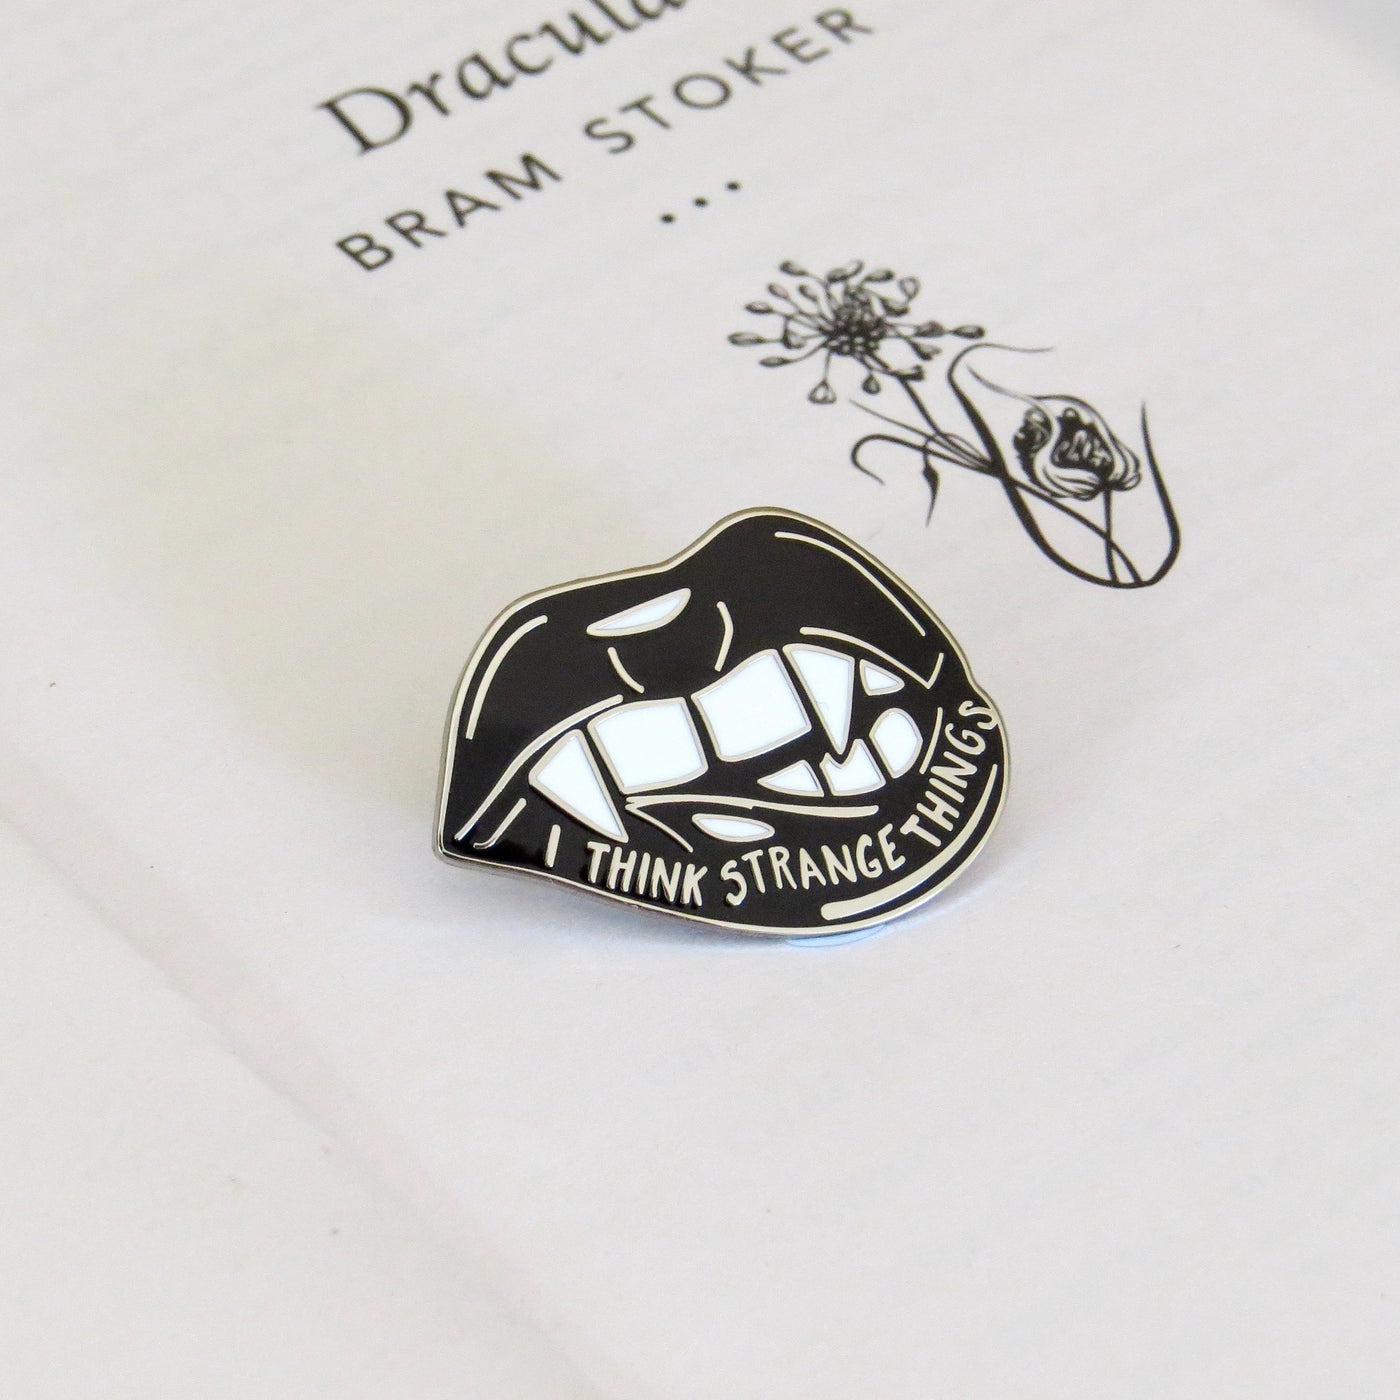 Dracula Love Bite Pin